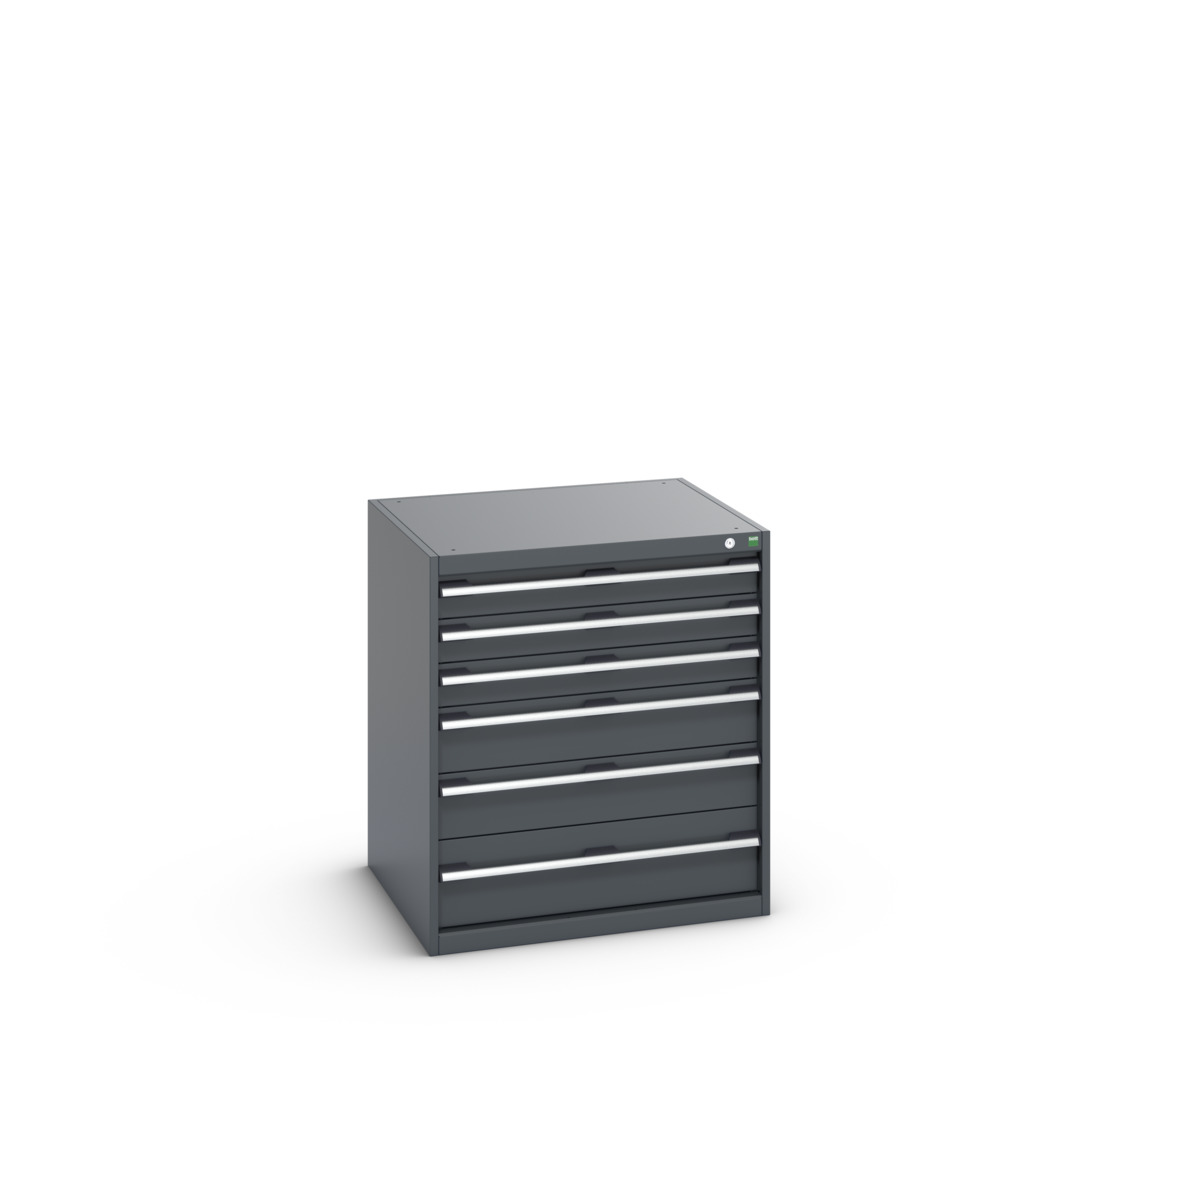 40028116.77V - cubio drawer cabinet